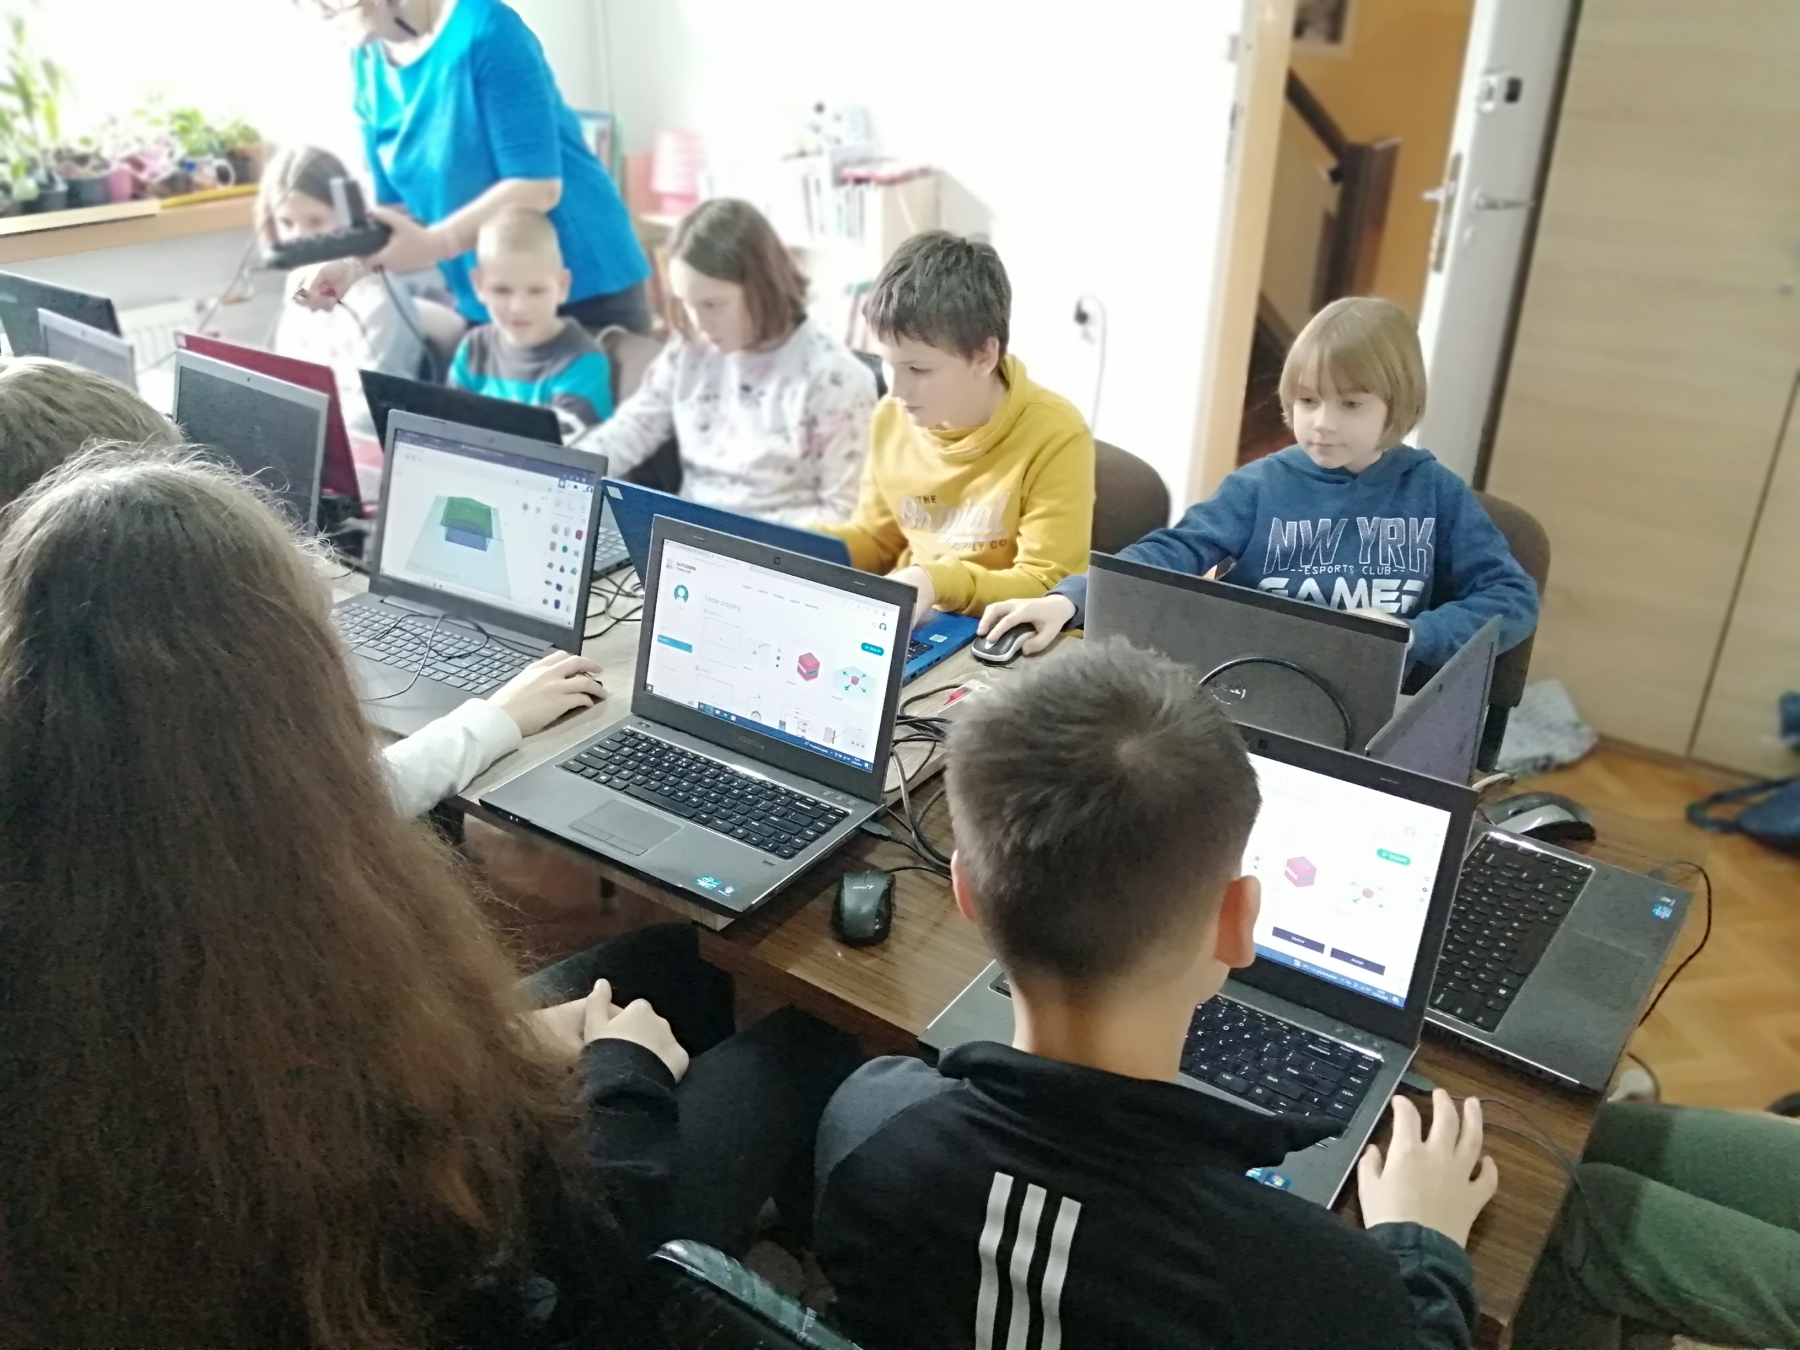 Młodzież przy laptopach projektuje breloczki 3D